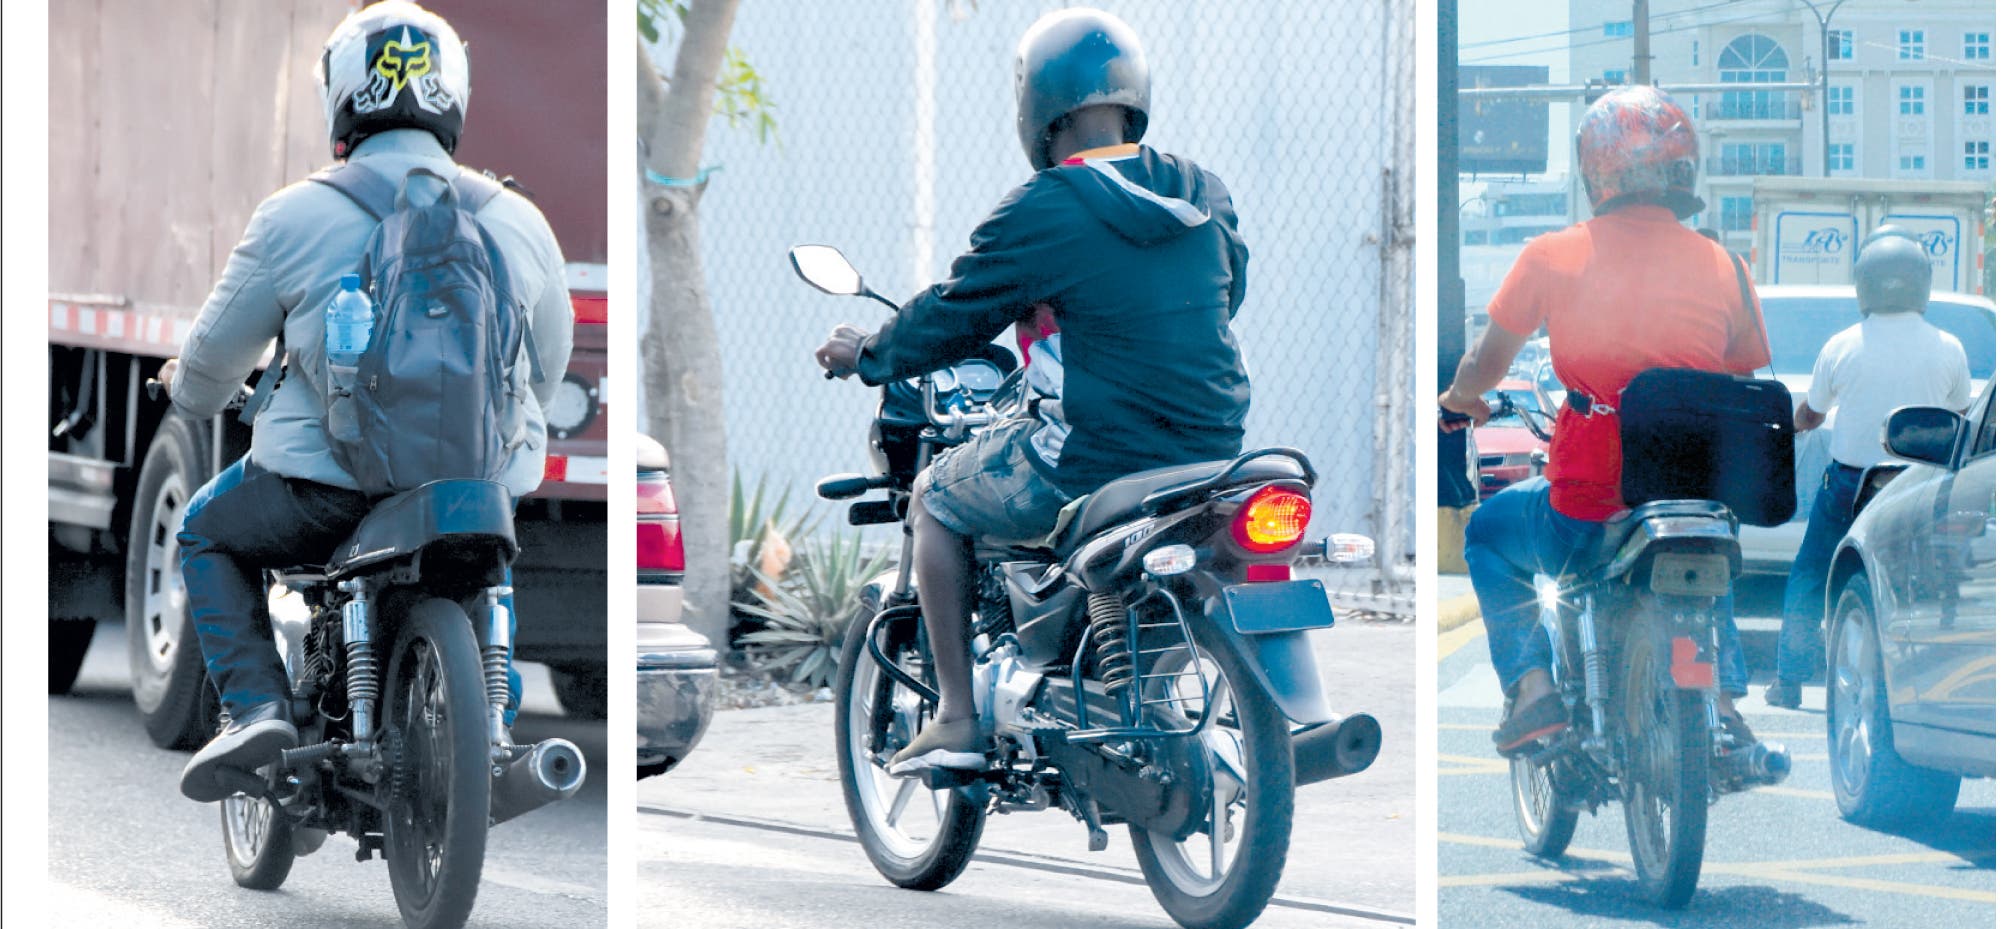 El 90% de las motocicletas circula en las vías sin placa